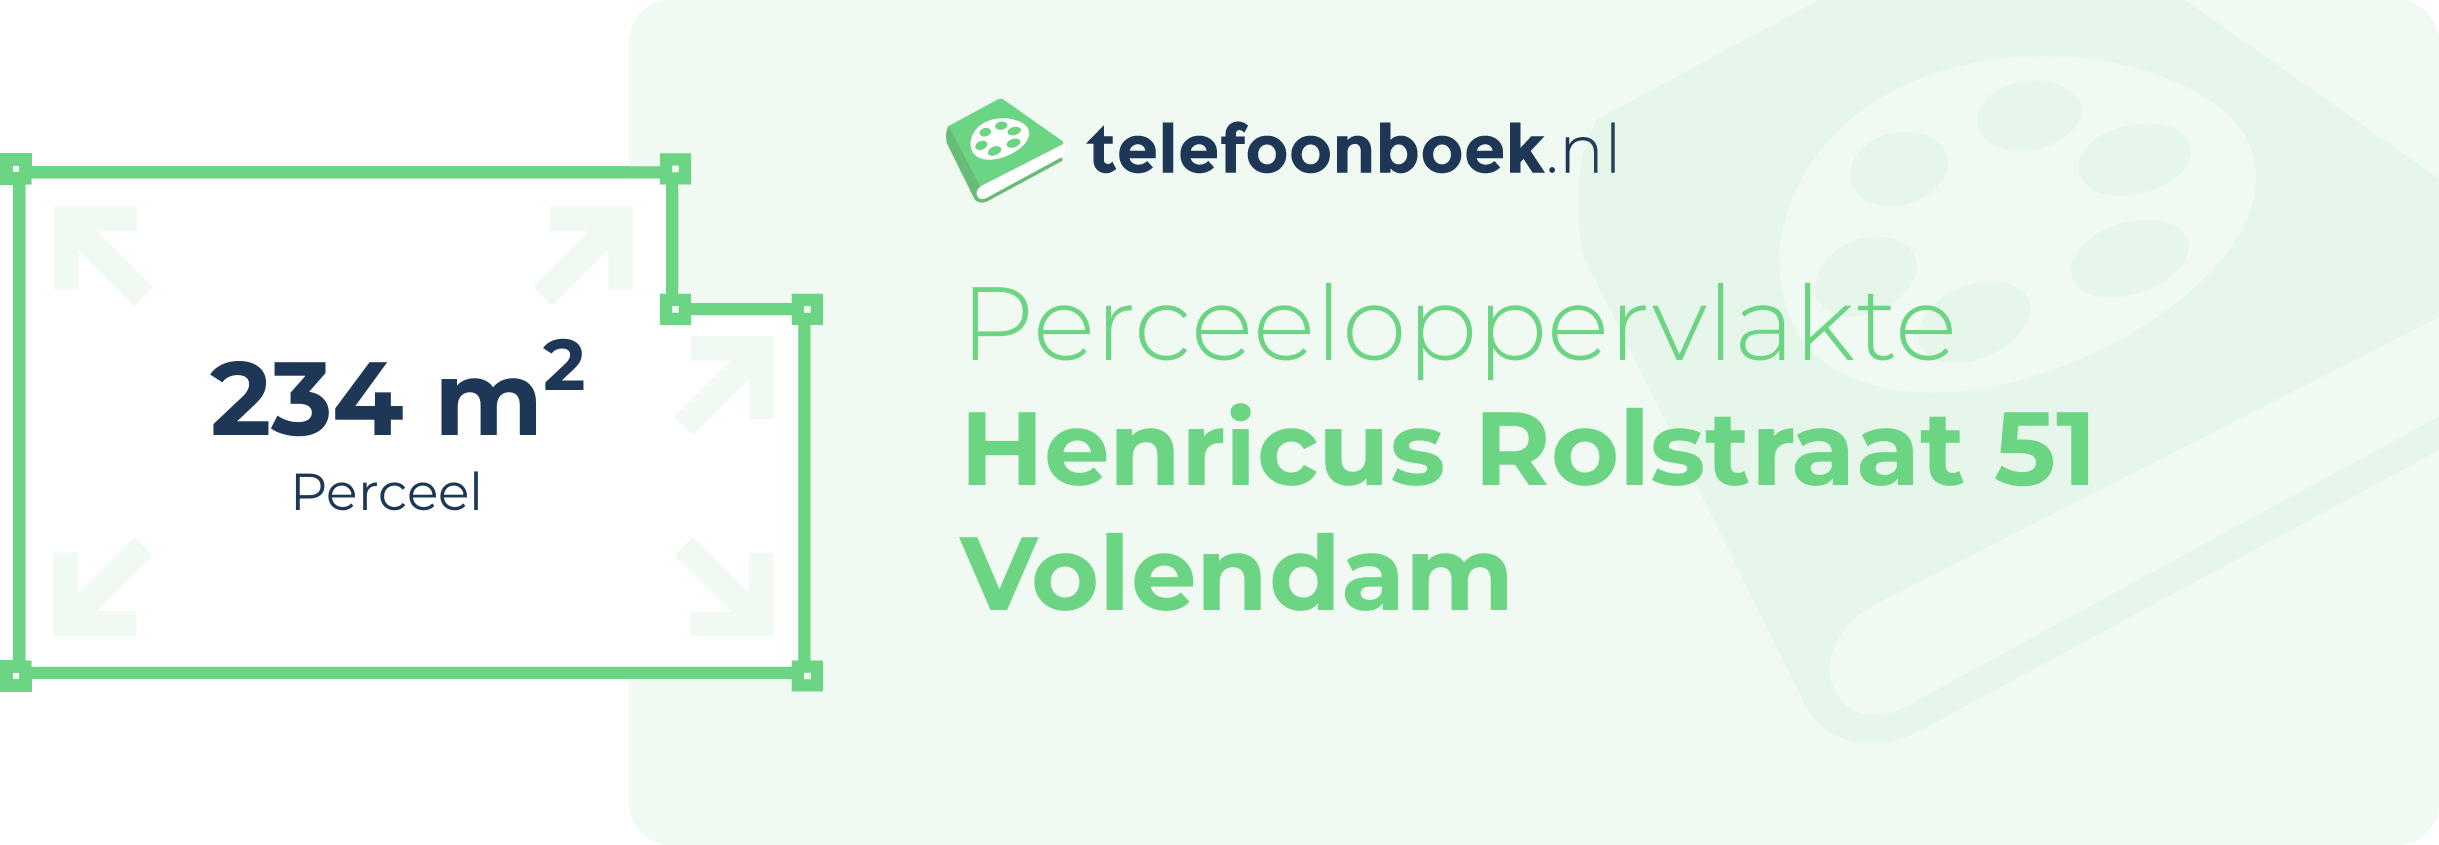 Perceeloppervlakte Henricus Rolstraat 51 Volendam